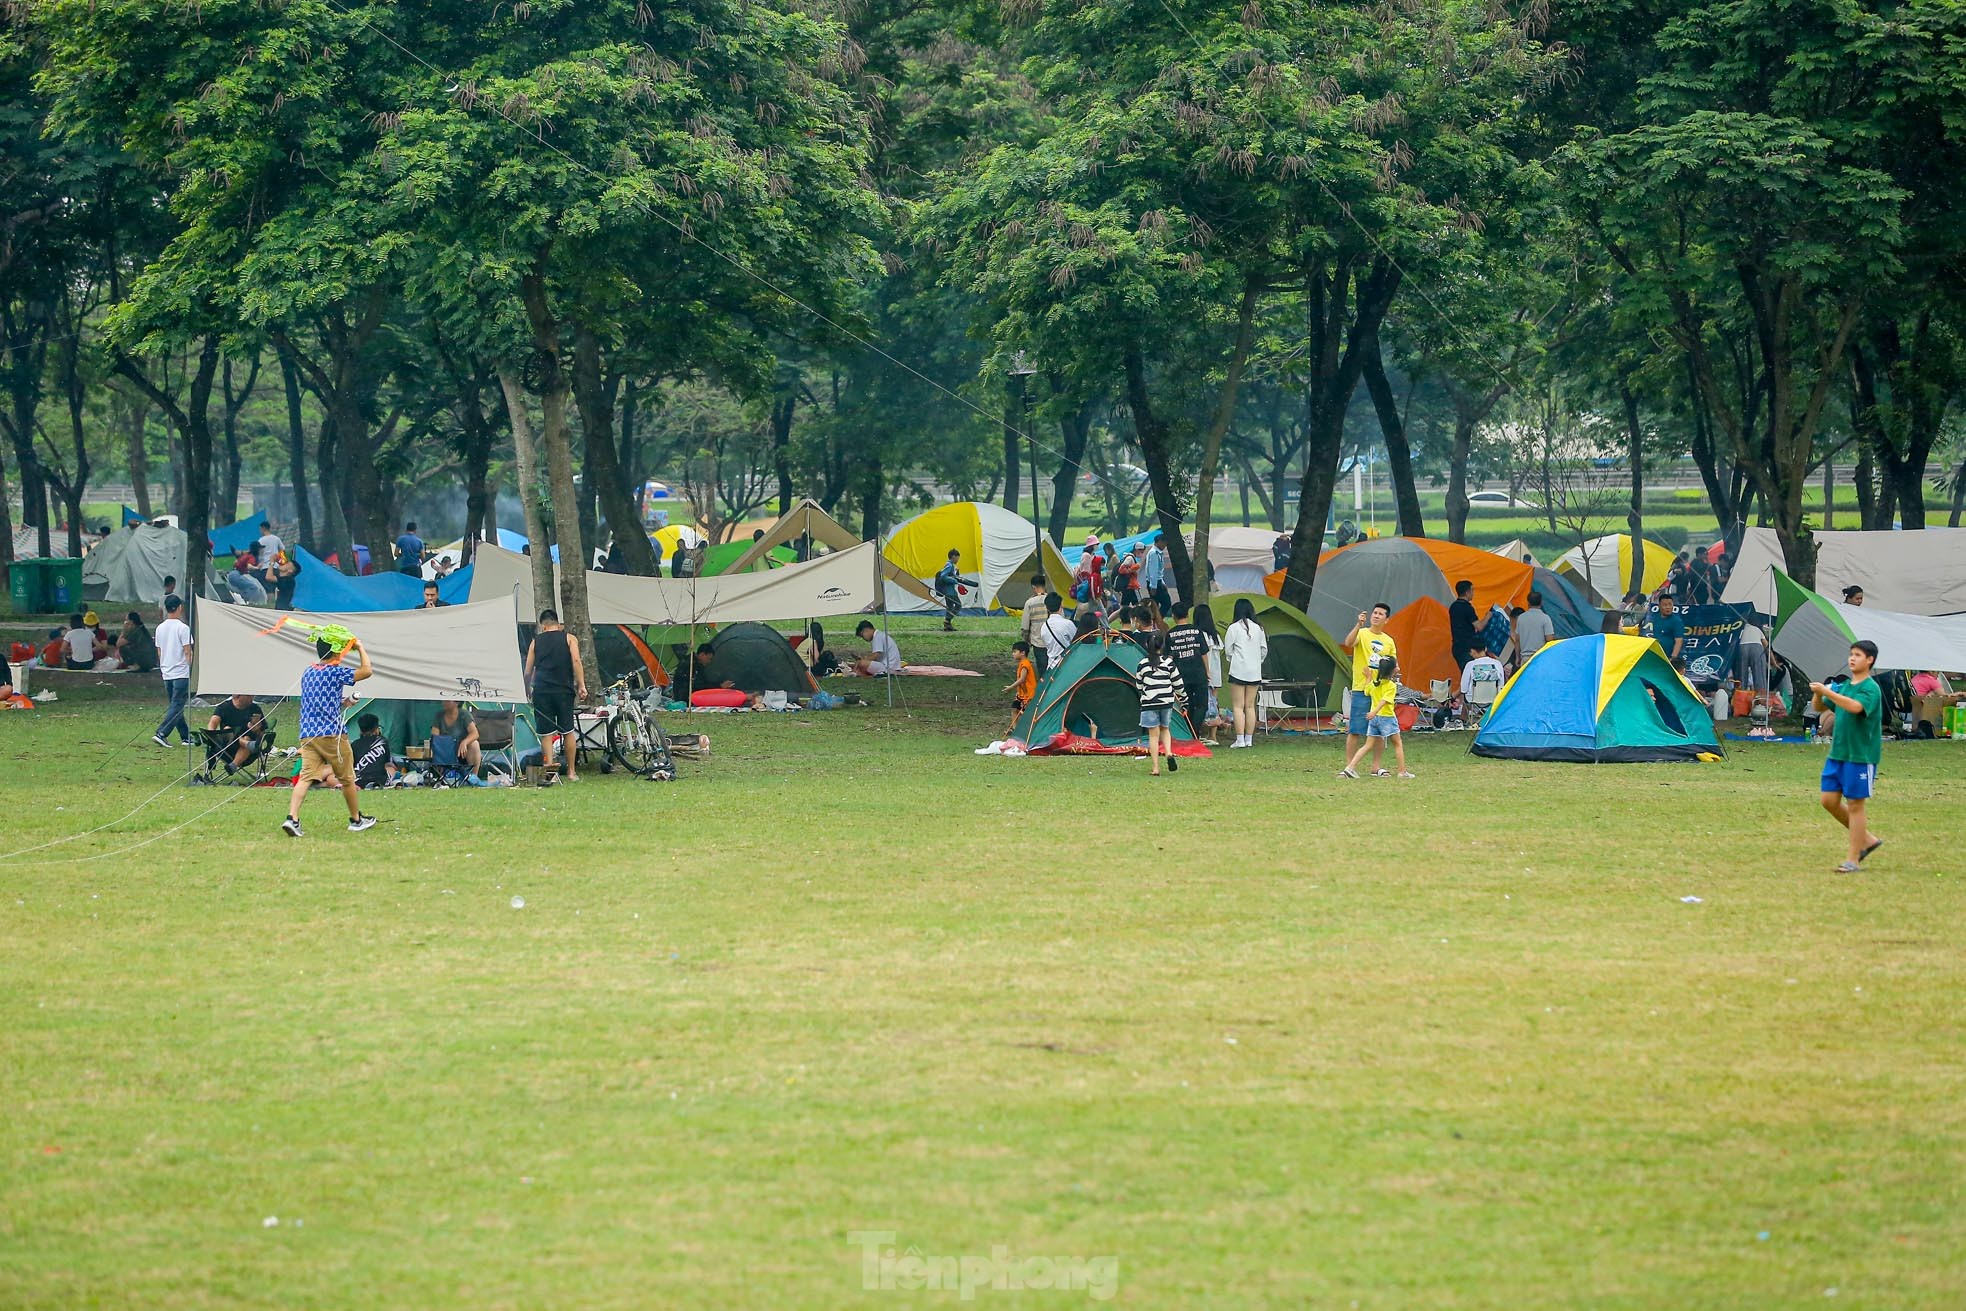 Hàng nghìn người đổ về công viên Yên Sở cắm trại trong ngày nghỉ lễ - Ảnh 2.